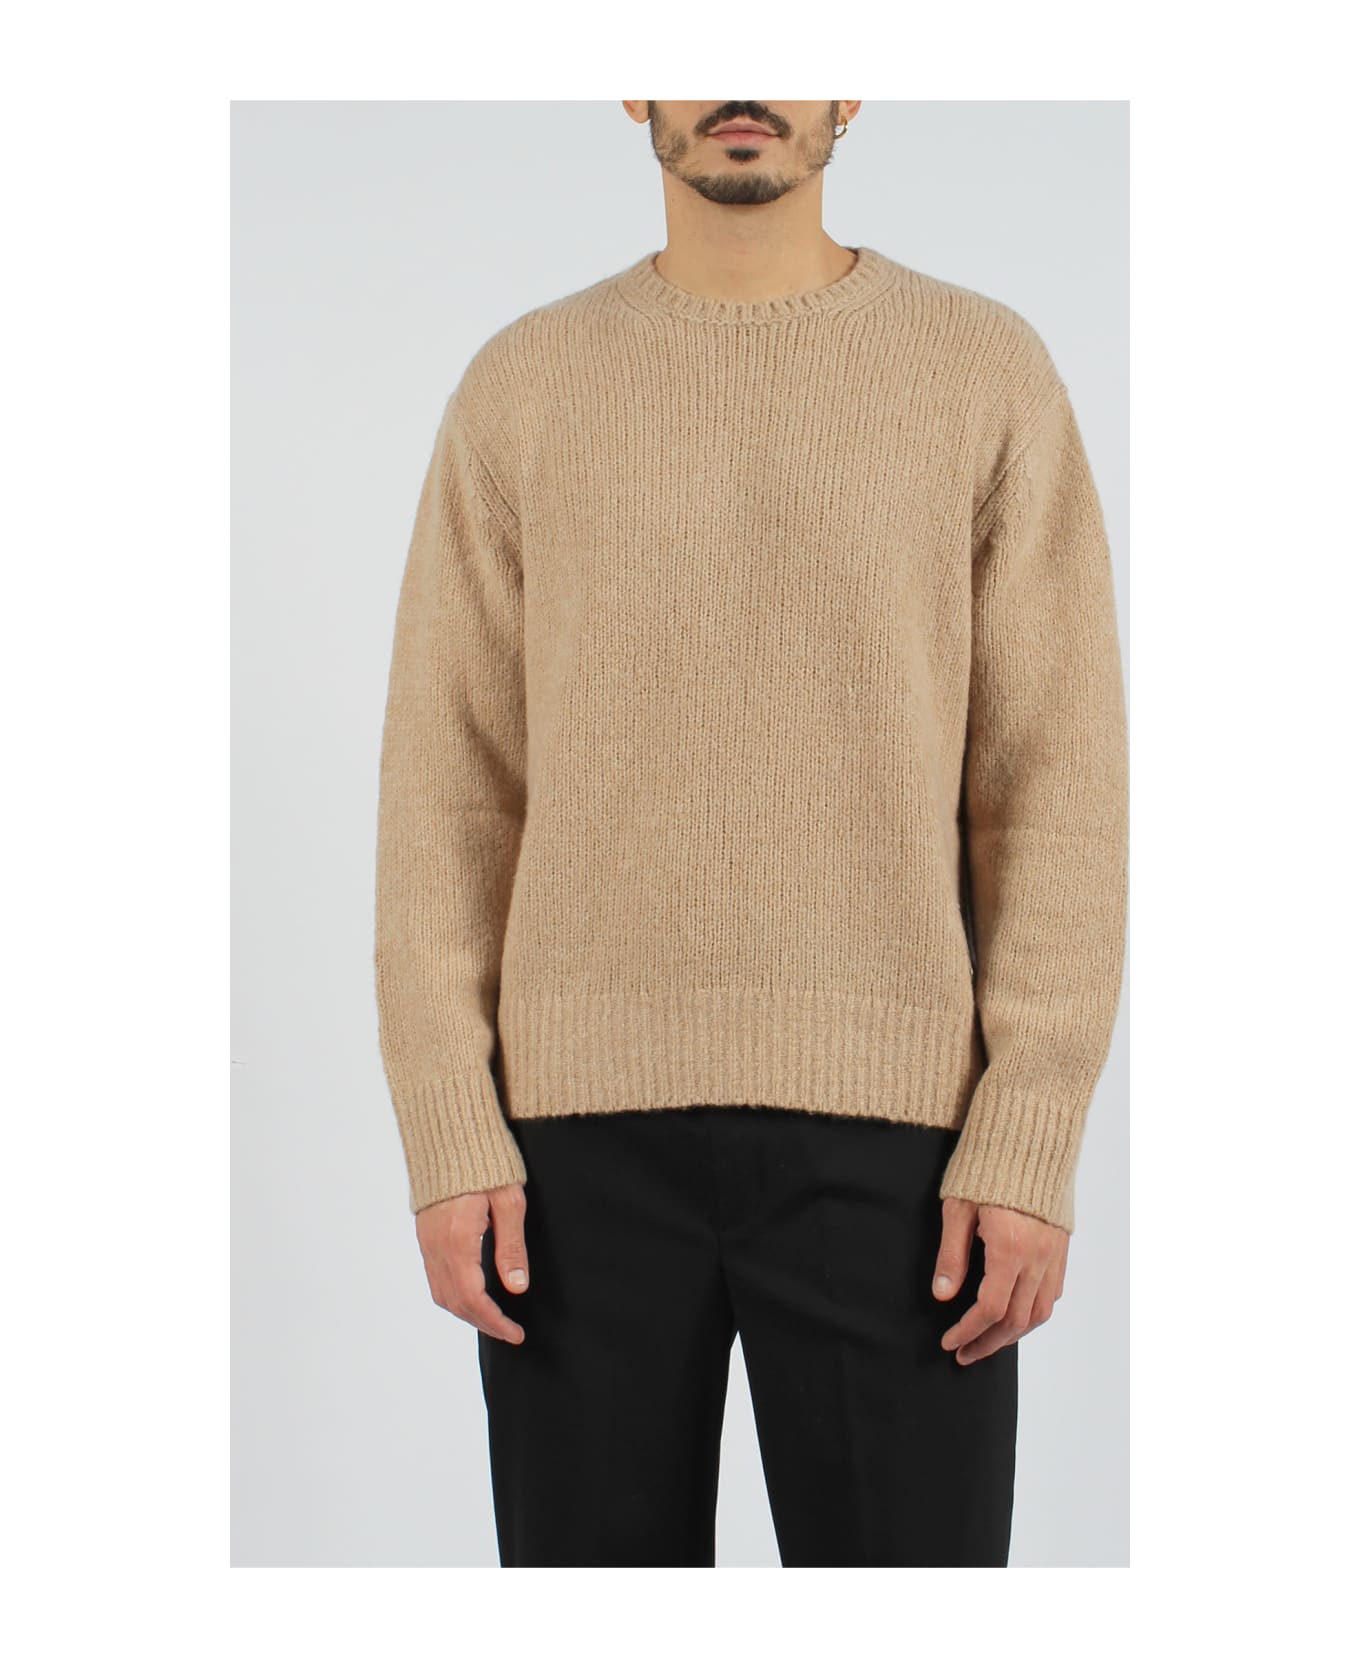 Neil Barrett Thunderbolt Patch Sweater - Light Brown